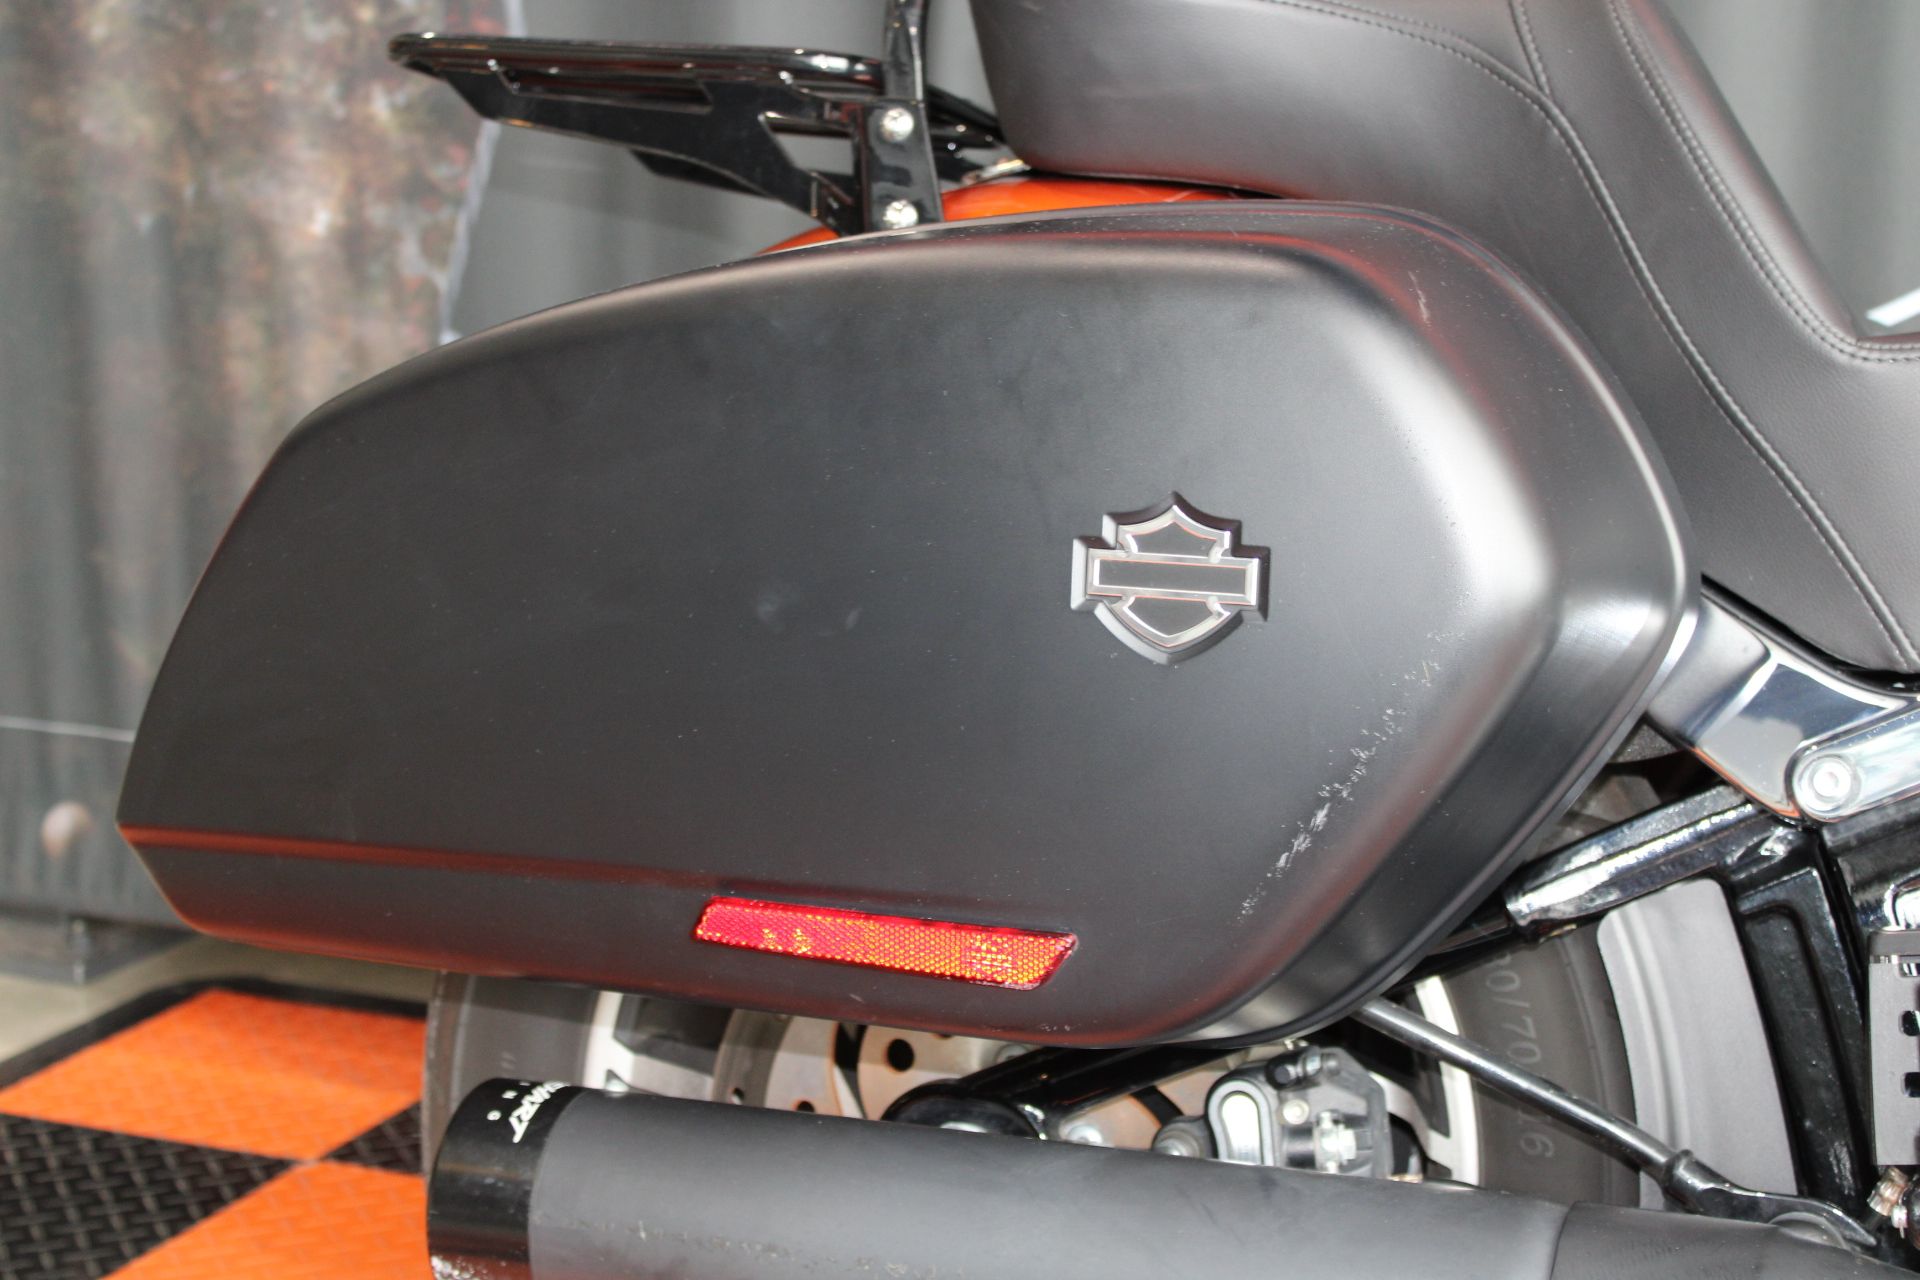 2020 Harley-Davidson Sport Glide® in Shorewood, Illinois - Photo 16